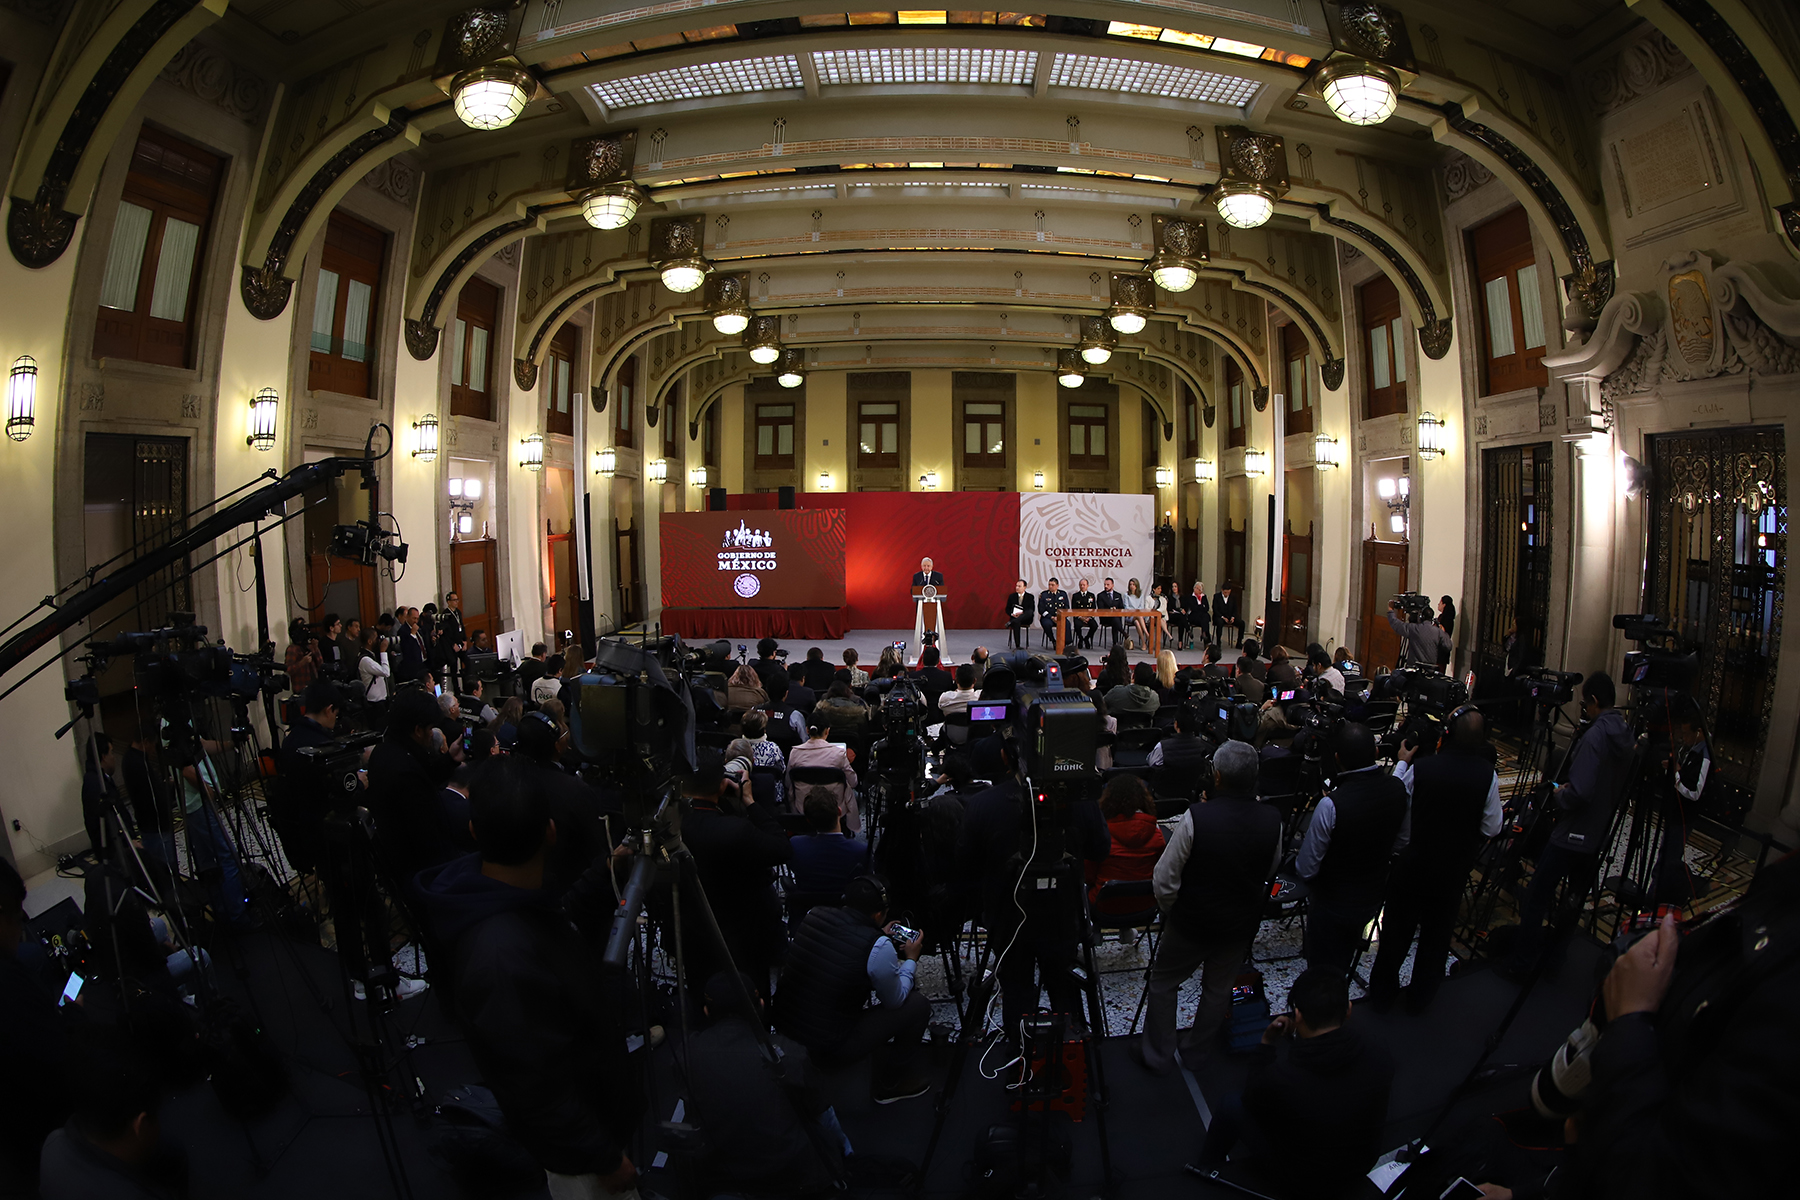 El Presidente Andrés Manuel López Obrador convocó a la participación en nueve municipios de Tlaxcala, 36 municipios de Morelos y 15 municipios de Puebla, para resolver un conflicto con el método democrático, donde la gente decida.